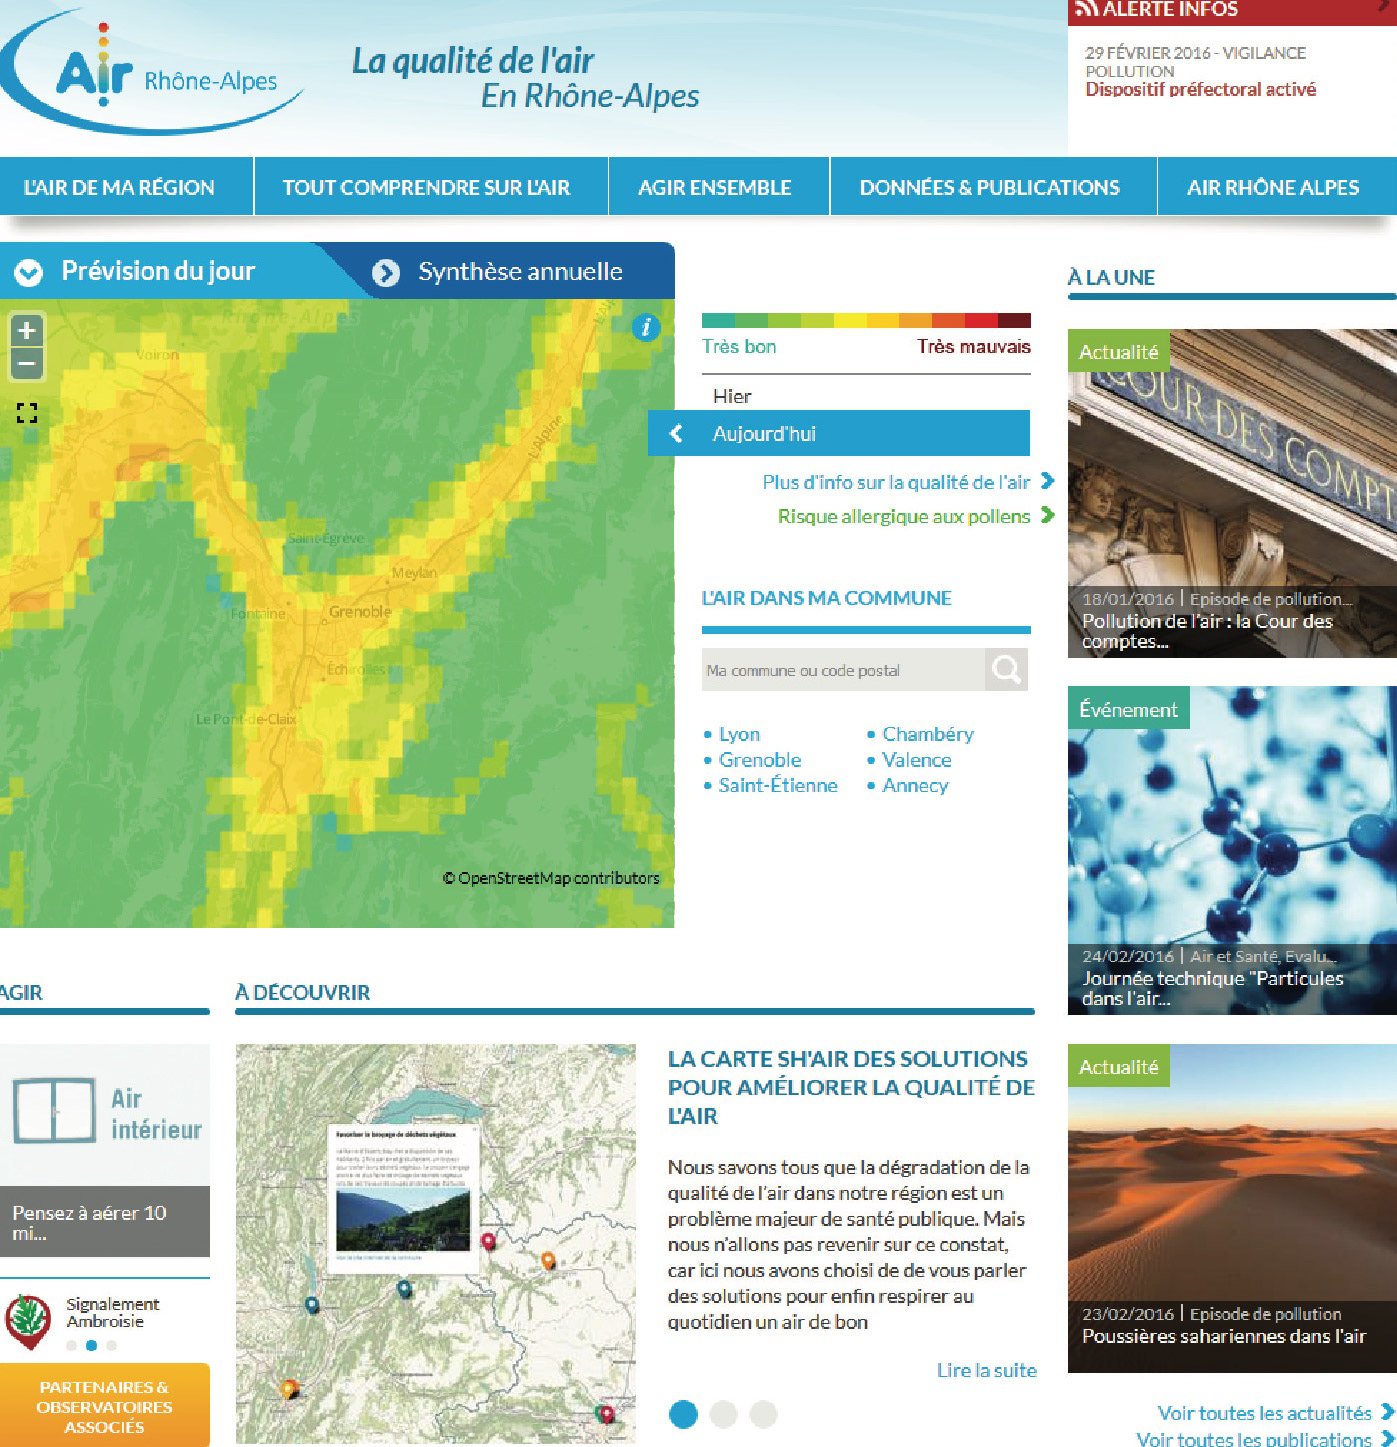 Site de Air Rhône-Alpes - Impression écran du 29 février 2016